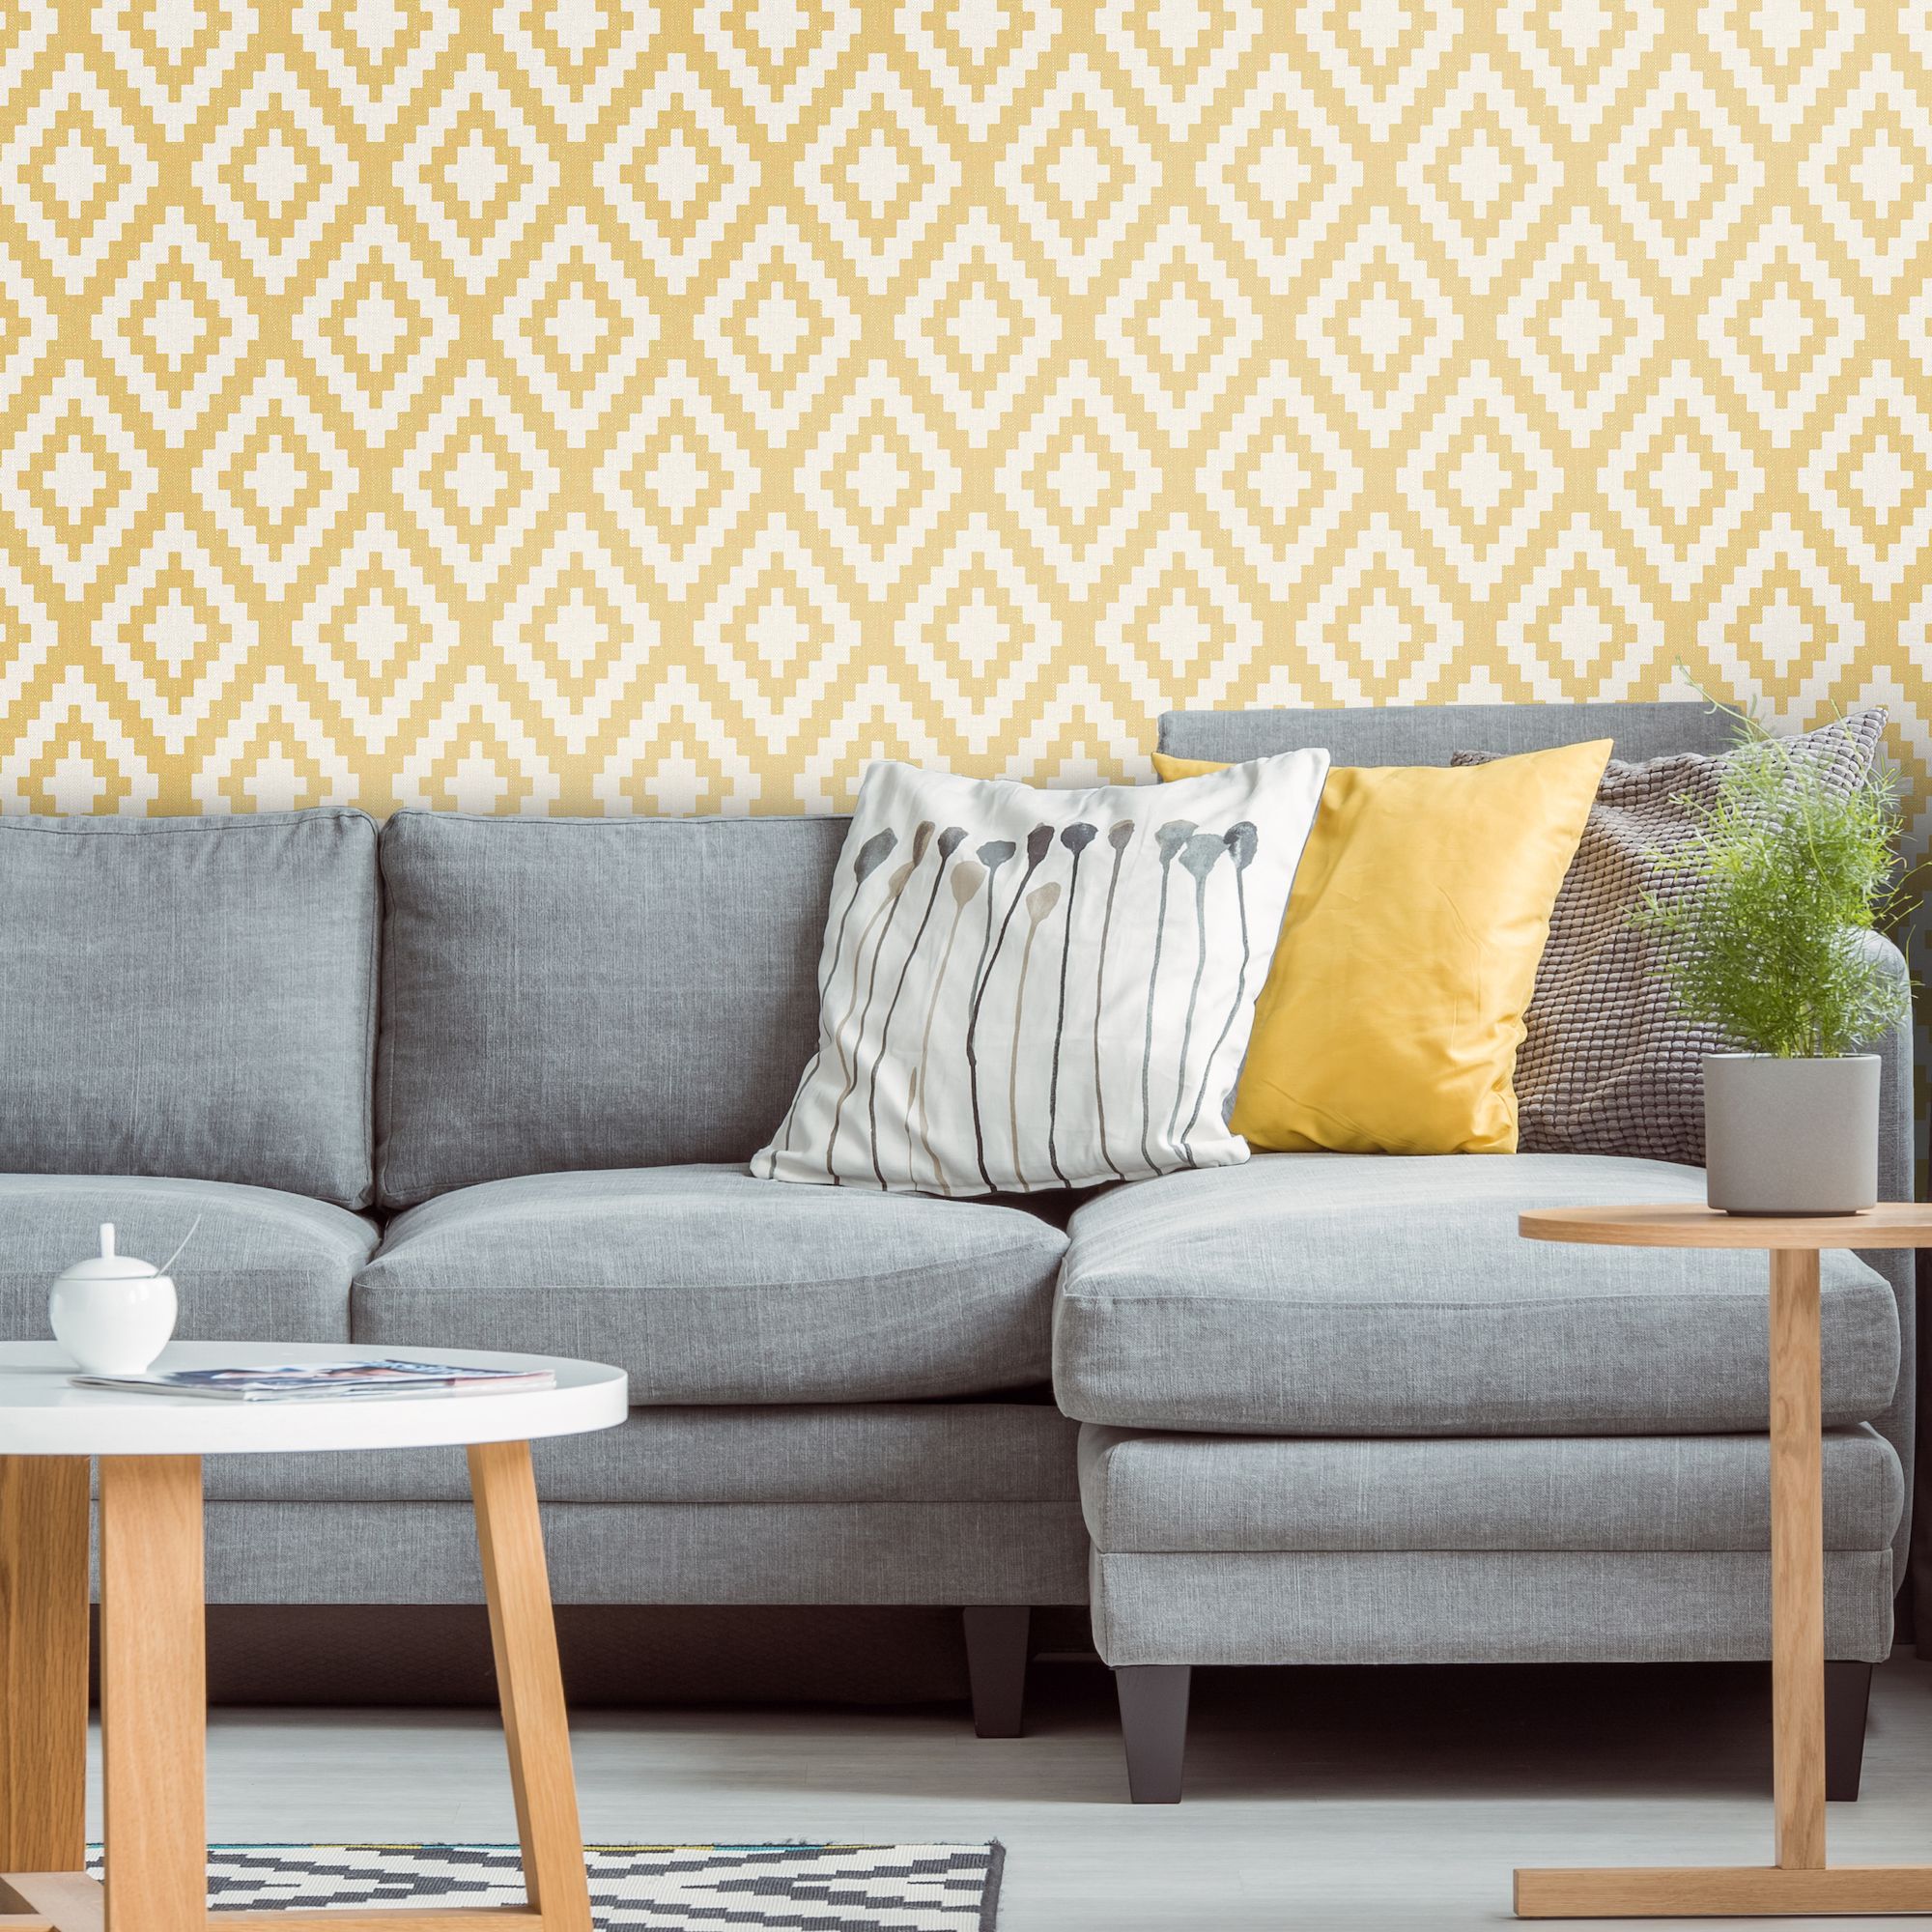 Luxury Modern 3D Non-woven Wallpaper Rolls Decor For Walls Desktop Living  Room | eBay